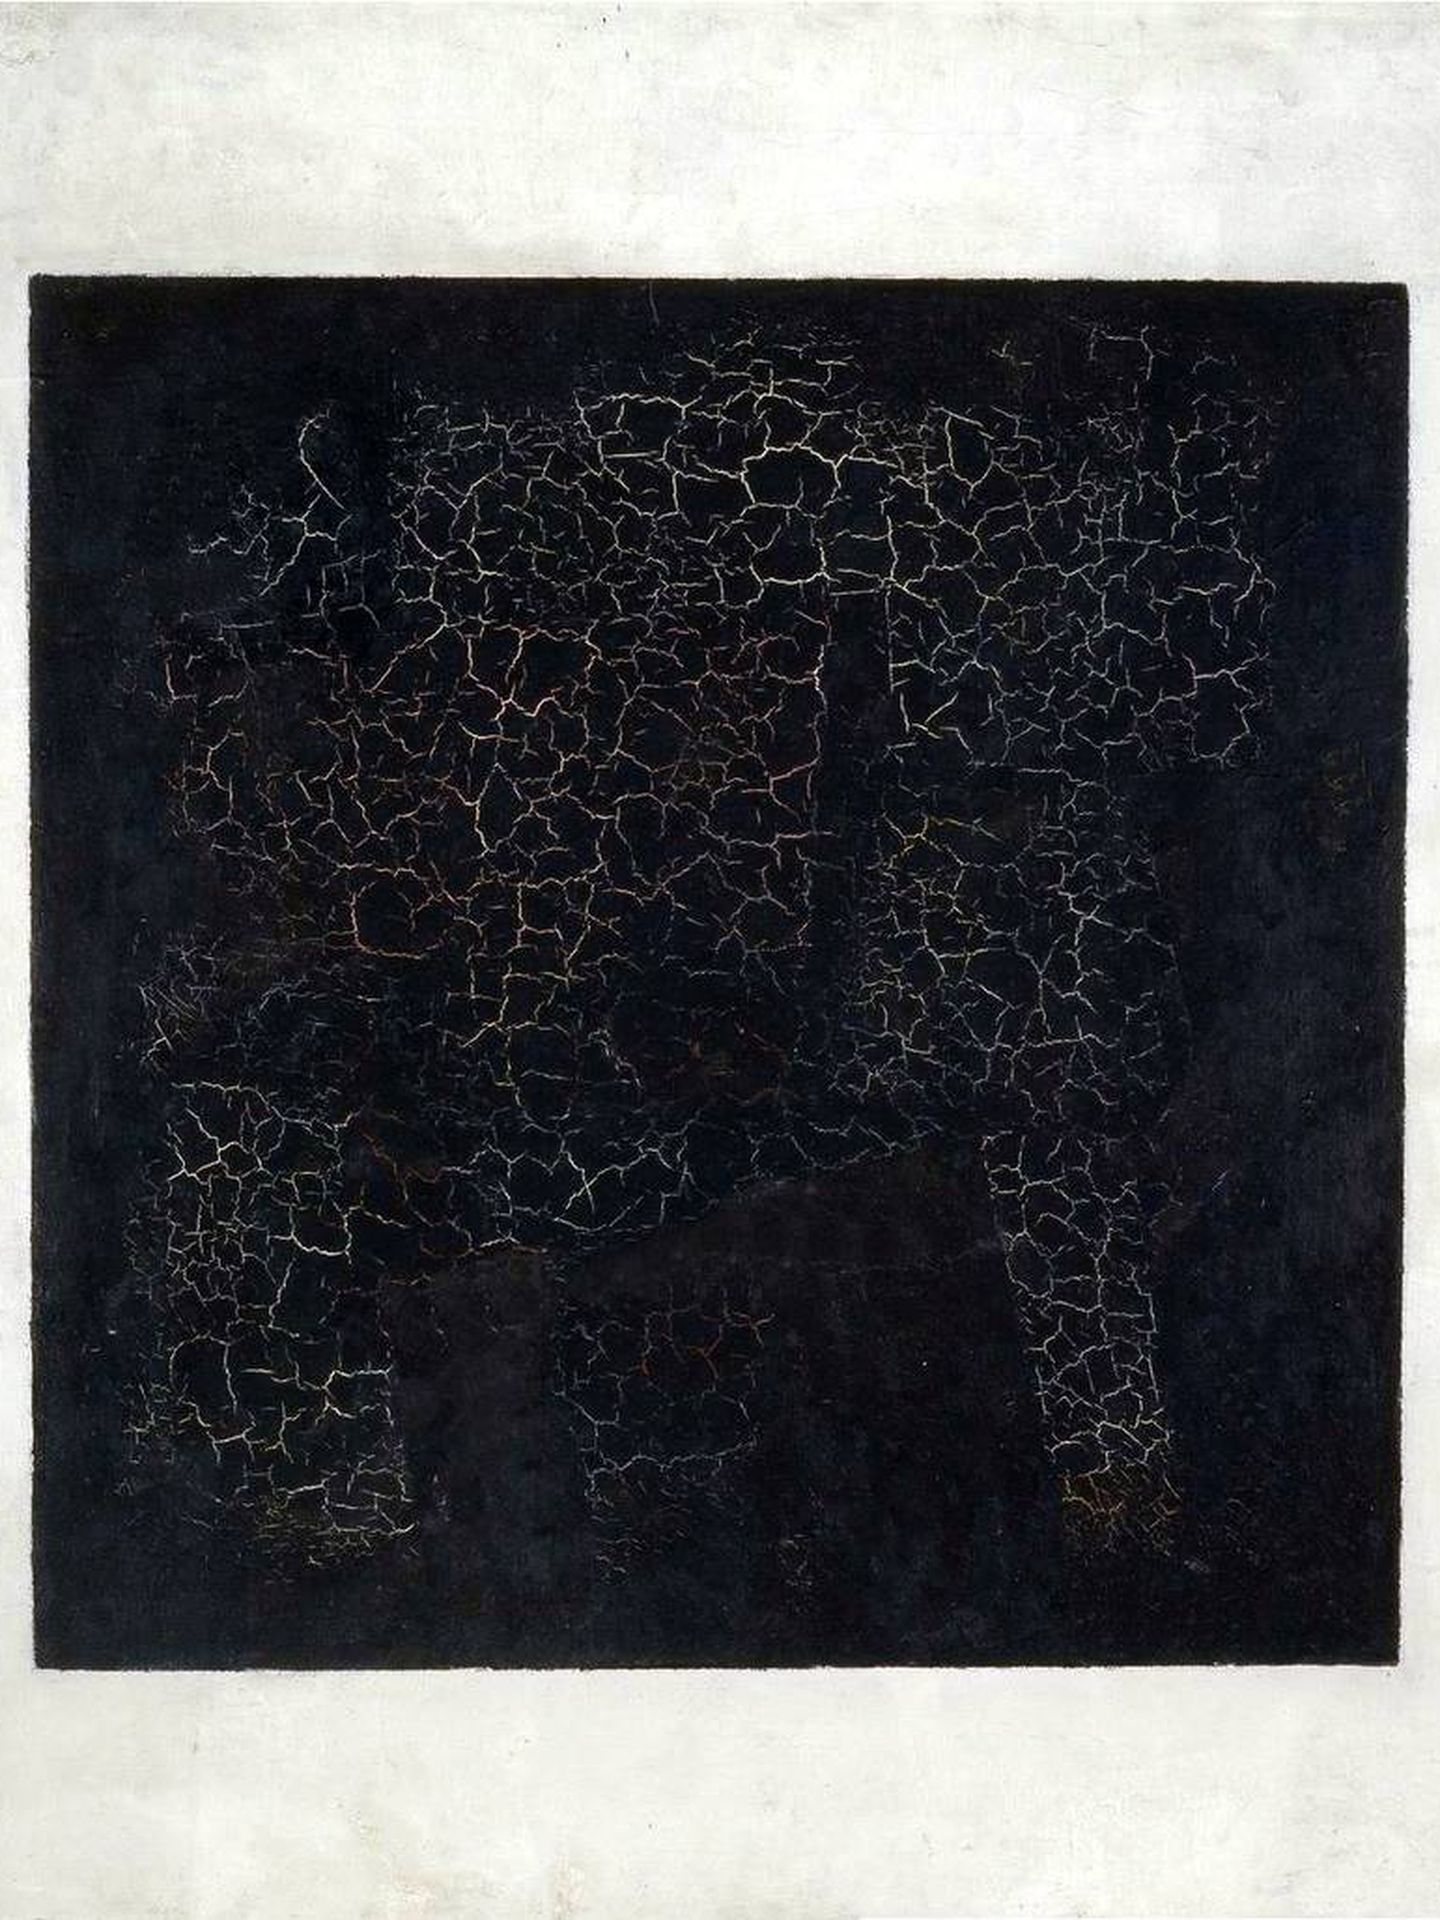 'Cuadrado negro', Kazimir Malévich, 1915. Galería Tretiakov.